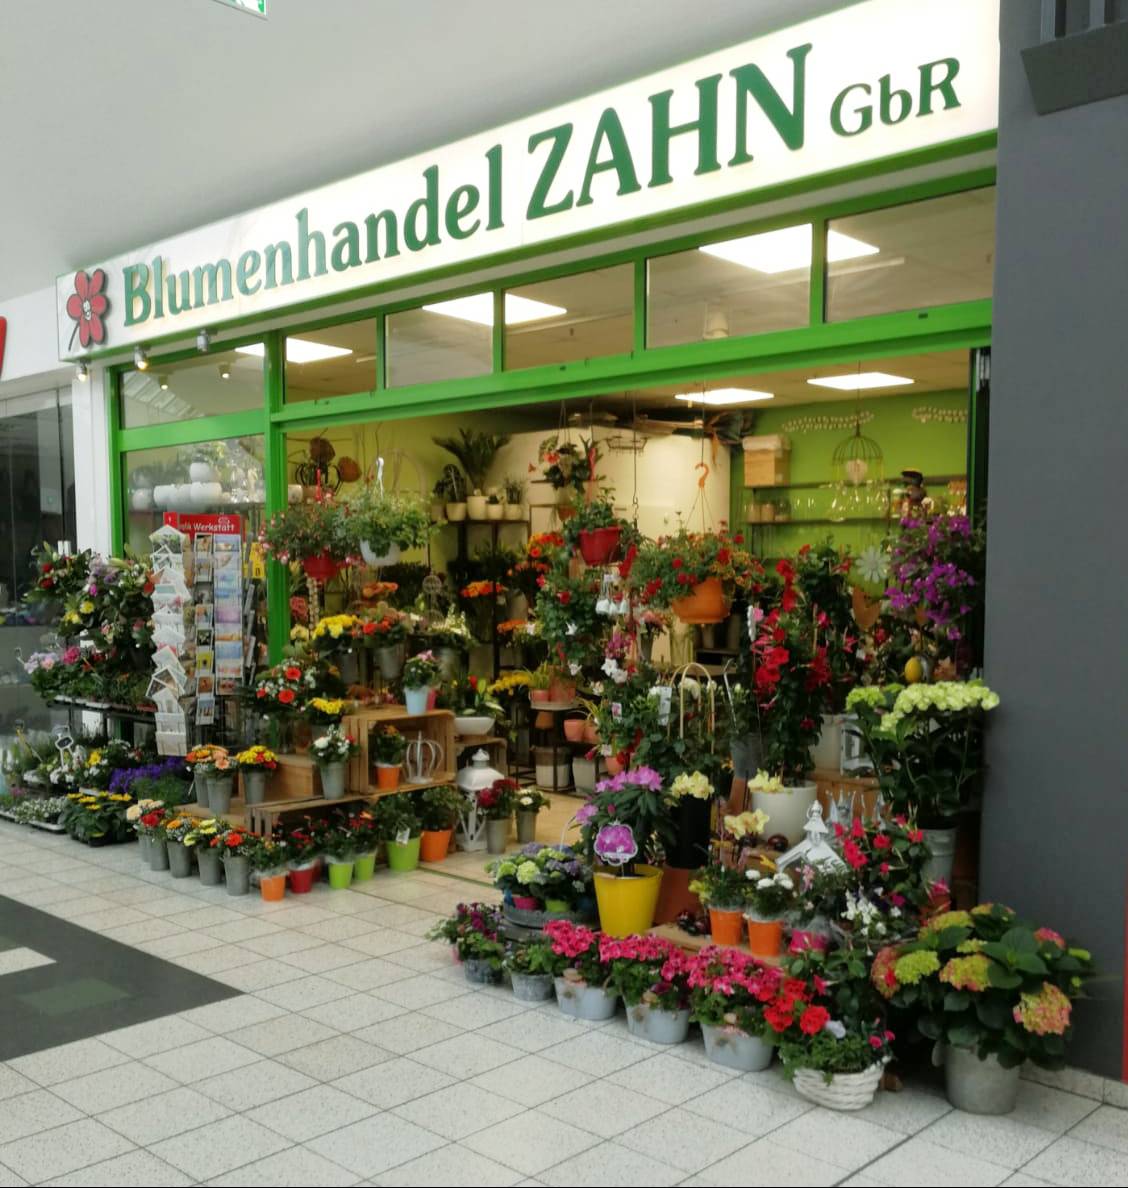 Bild 26 Blumenhandel Zahn GbR in Brandenburg an der Havel